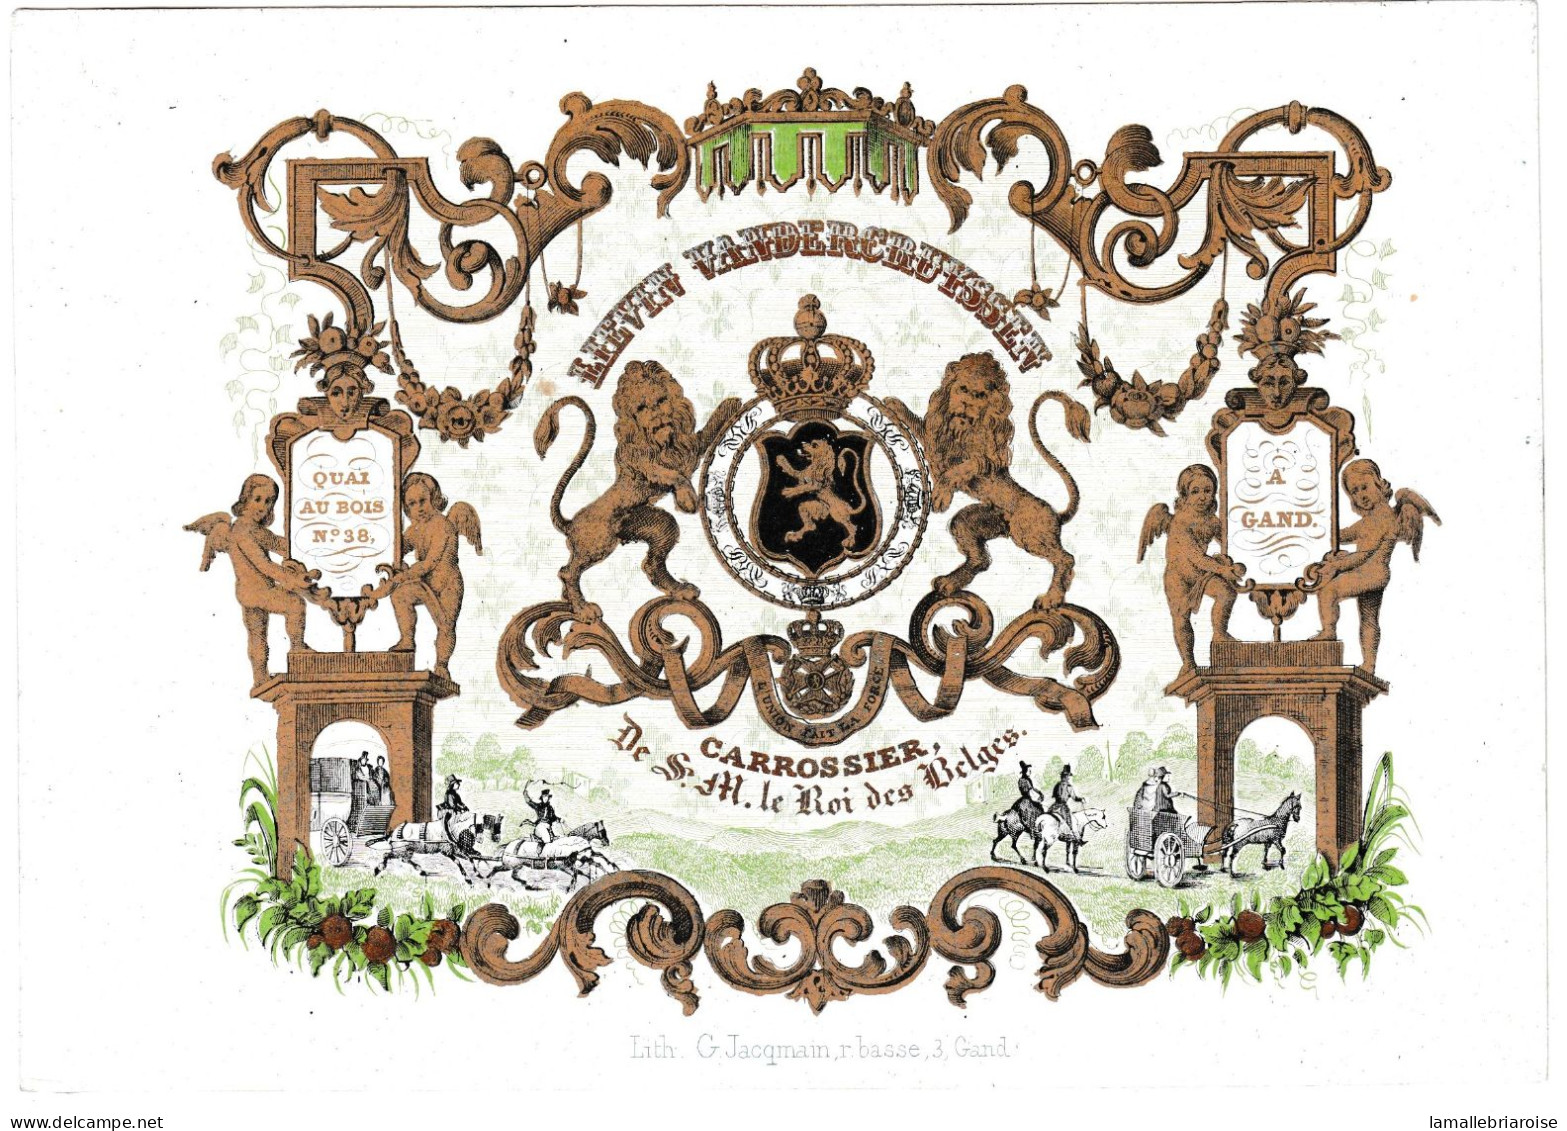 Belgique, Carte Porcelaine, Vandercruyssen, Carrossier De S. M. Le Roi Des Belges à Gand, Dim:192x126mm, - Porcelaine